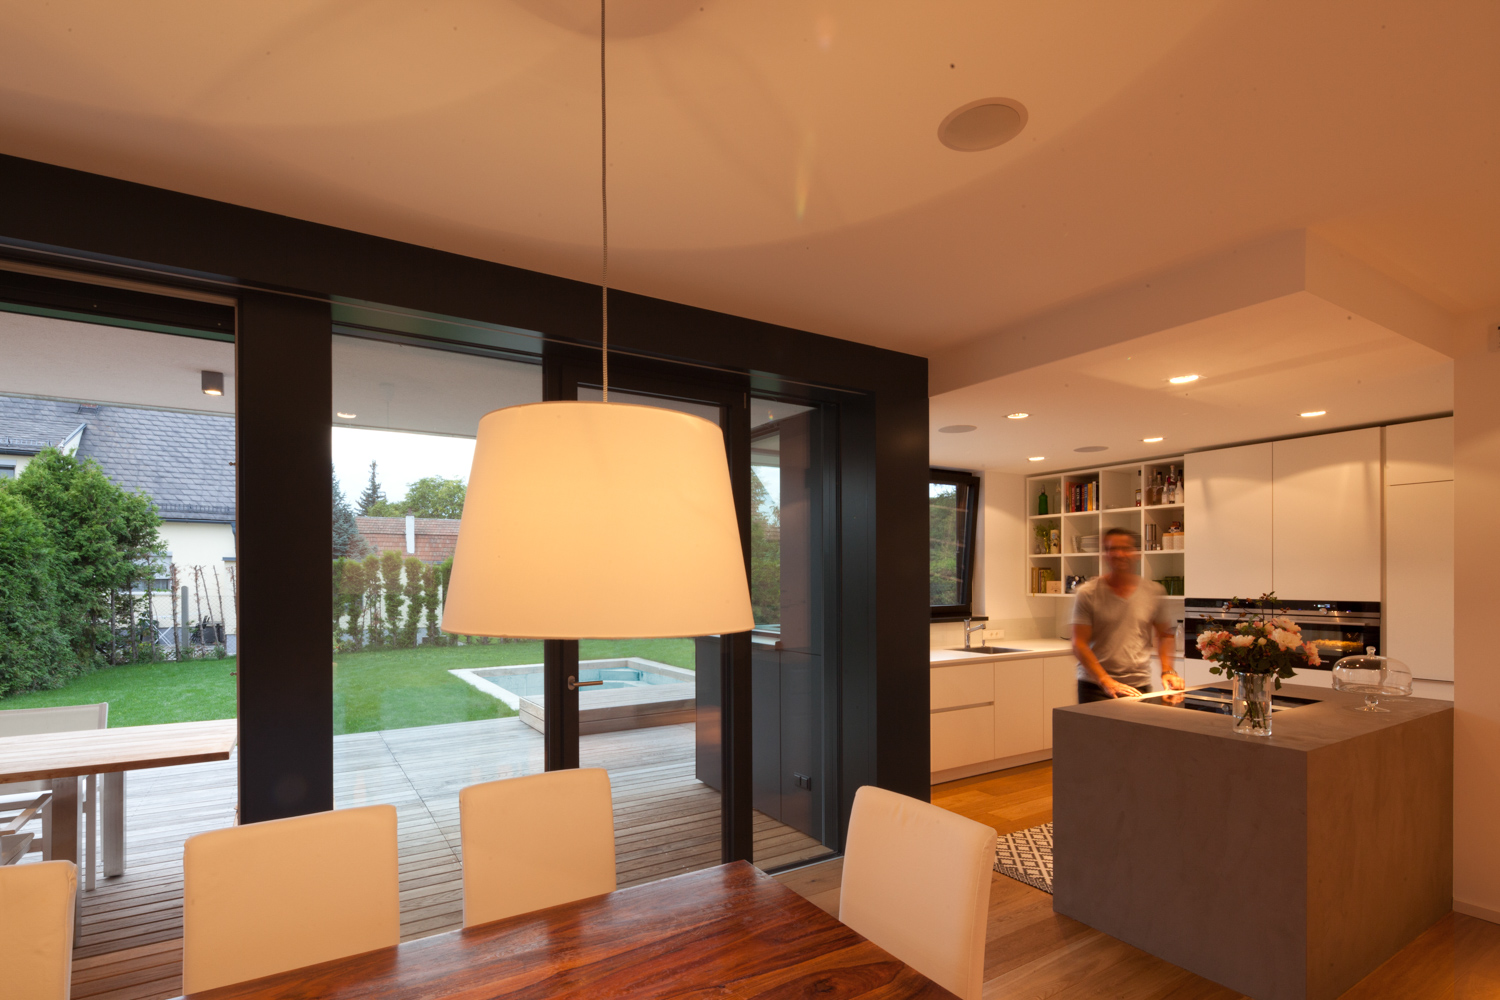 Bild des Wohnzimmers und der Küche mit integriertem Möbeldesign (Küchenblock) von einem Einfamilienhaus das von Architekten geplant wurde